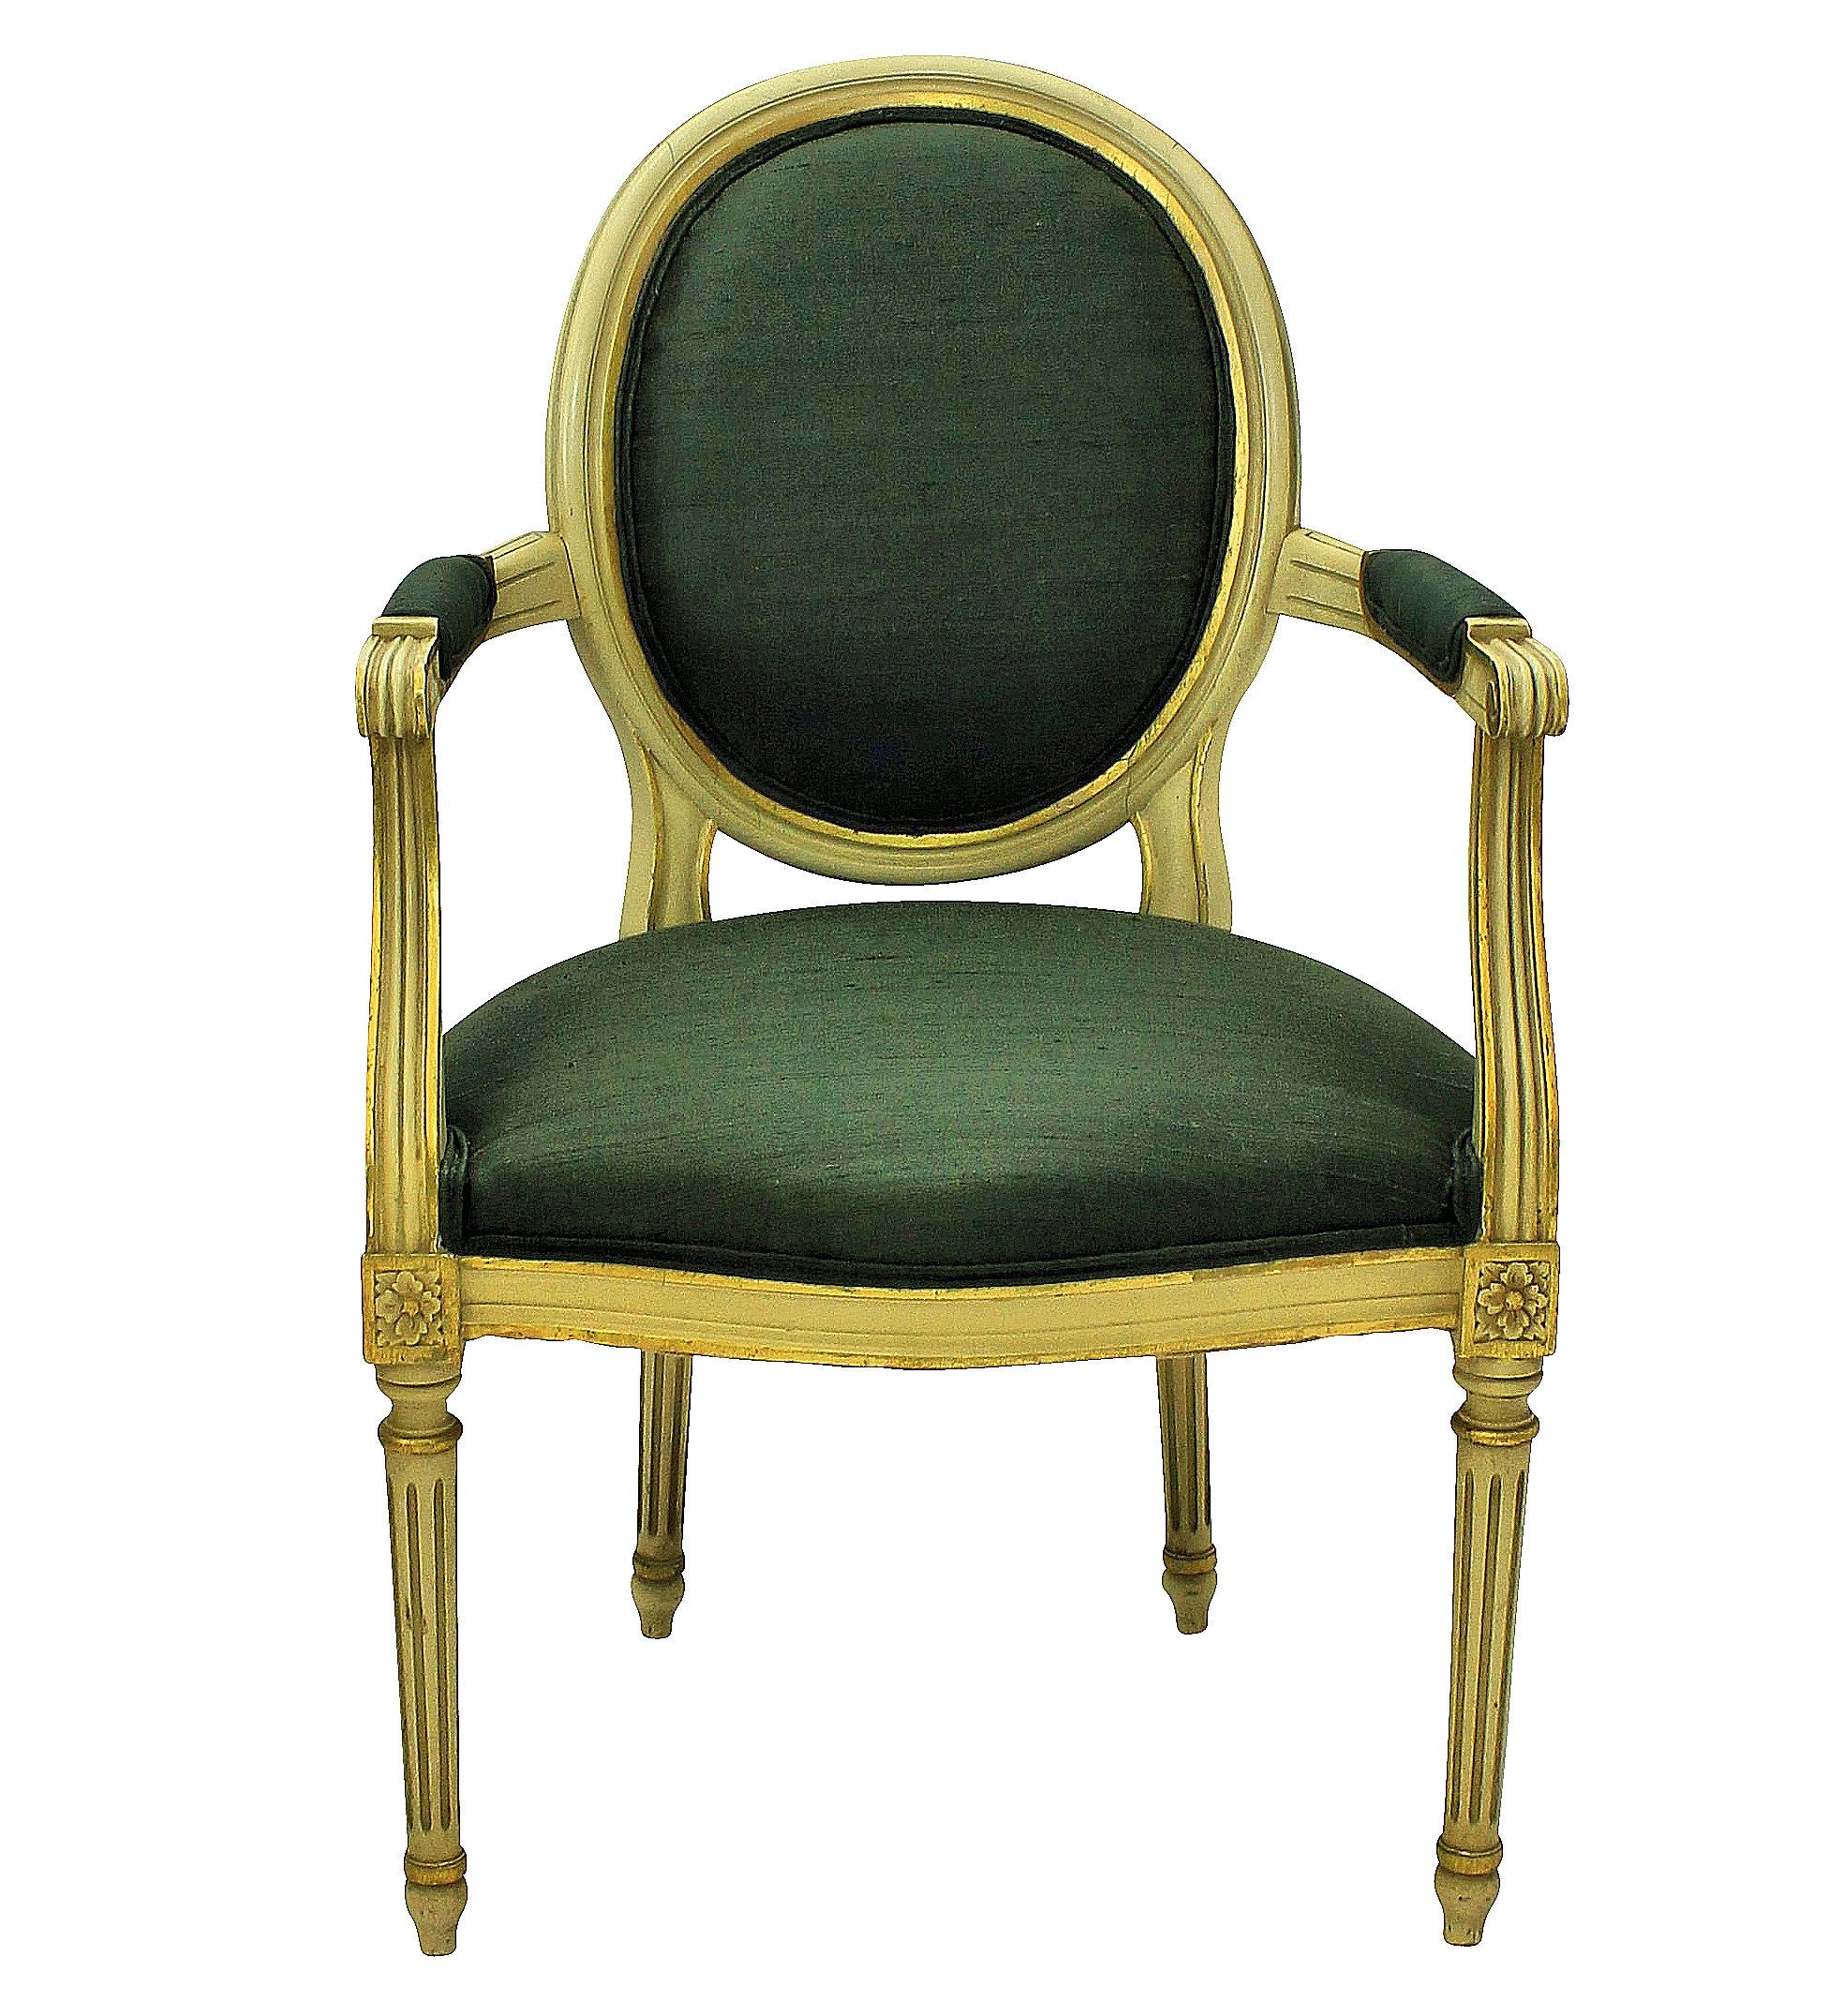 Ein Paar französischer bemalter und vergoldeter Sessel im Stil von Louis XV, gepolstert mit salbeigrüner Seide.
 